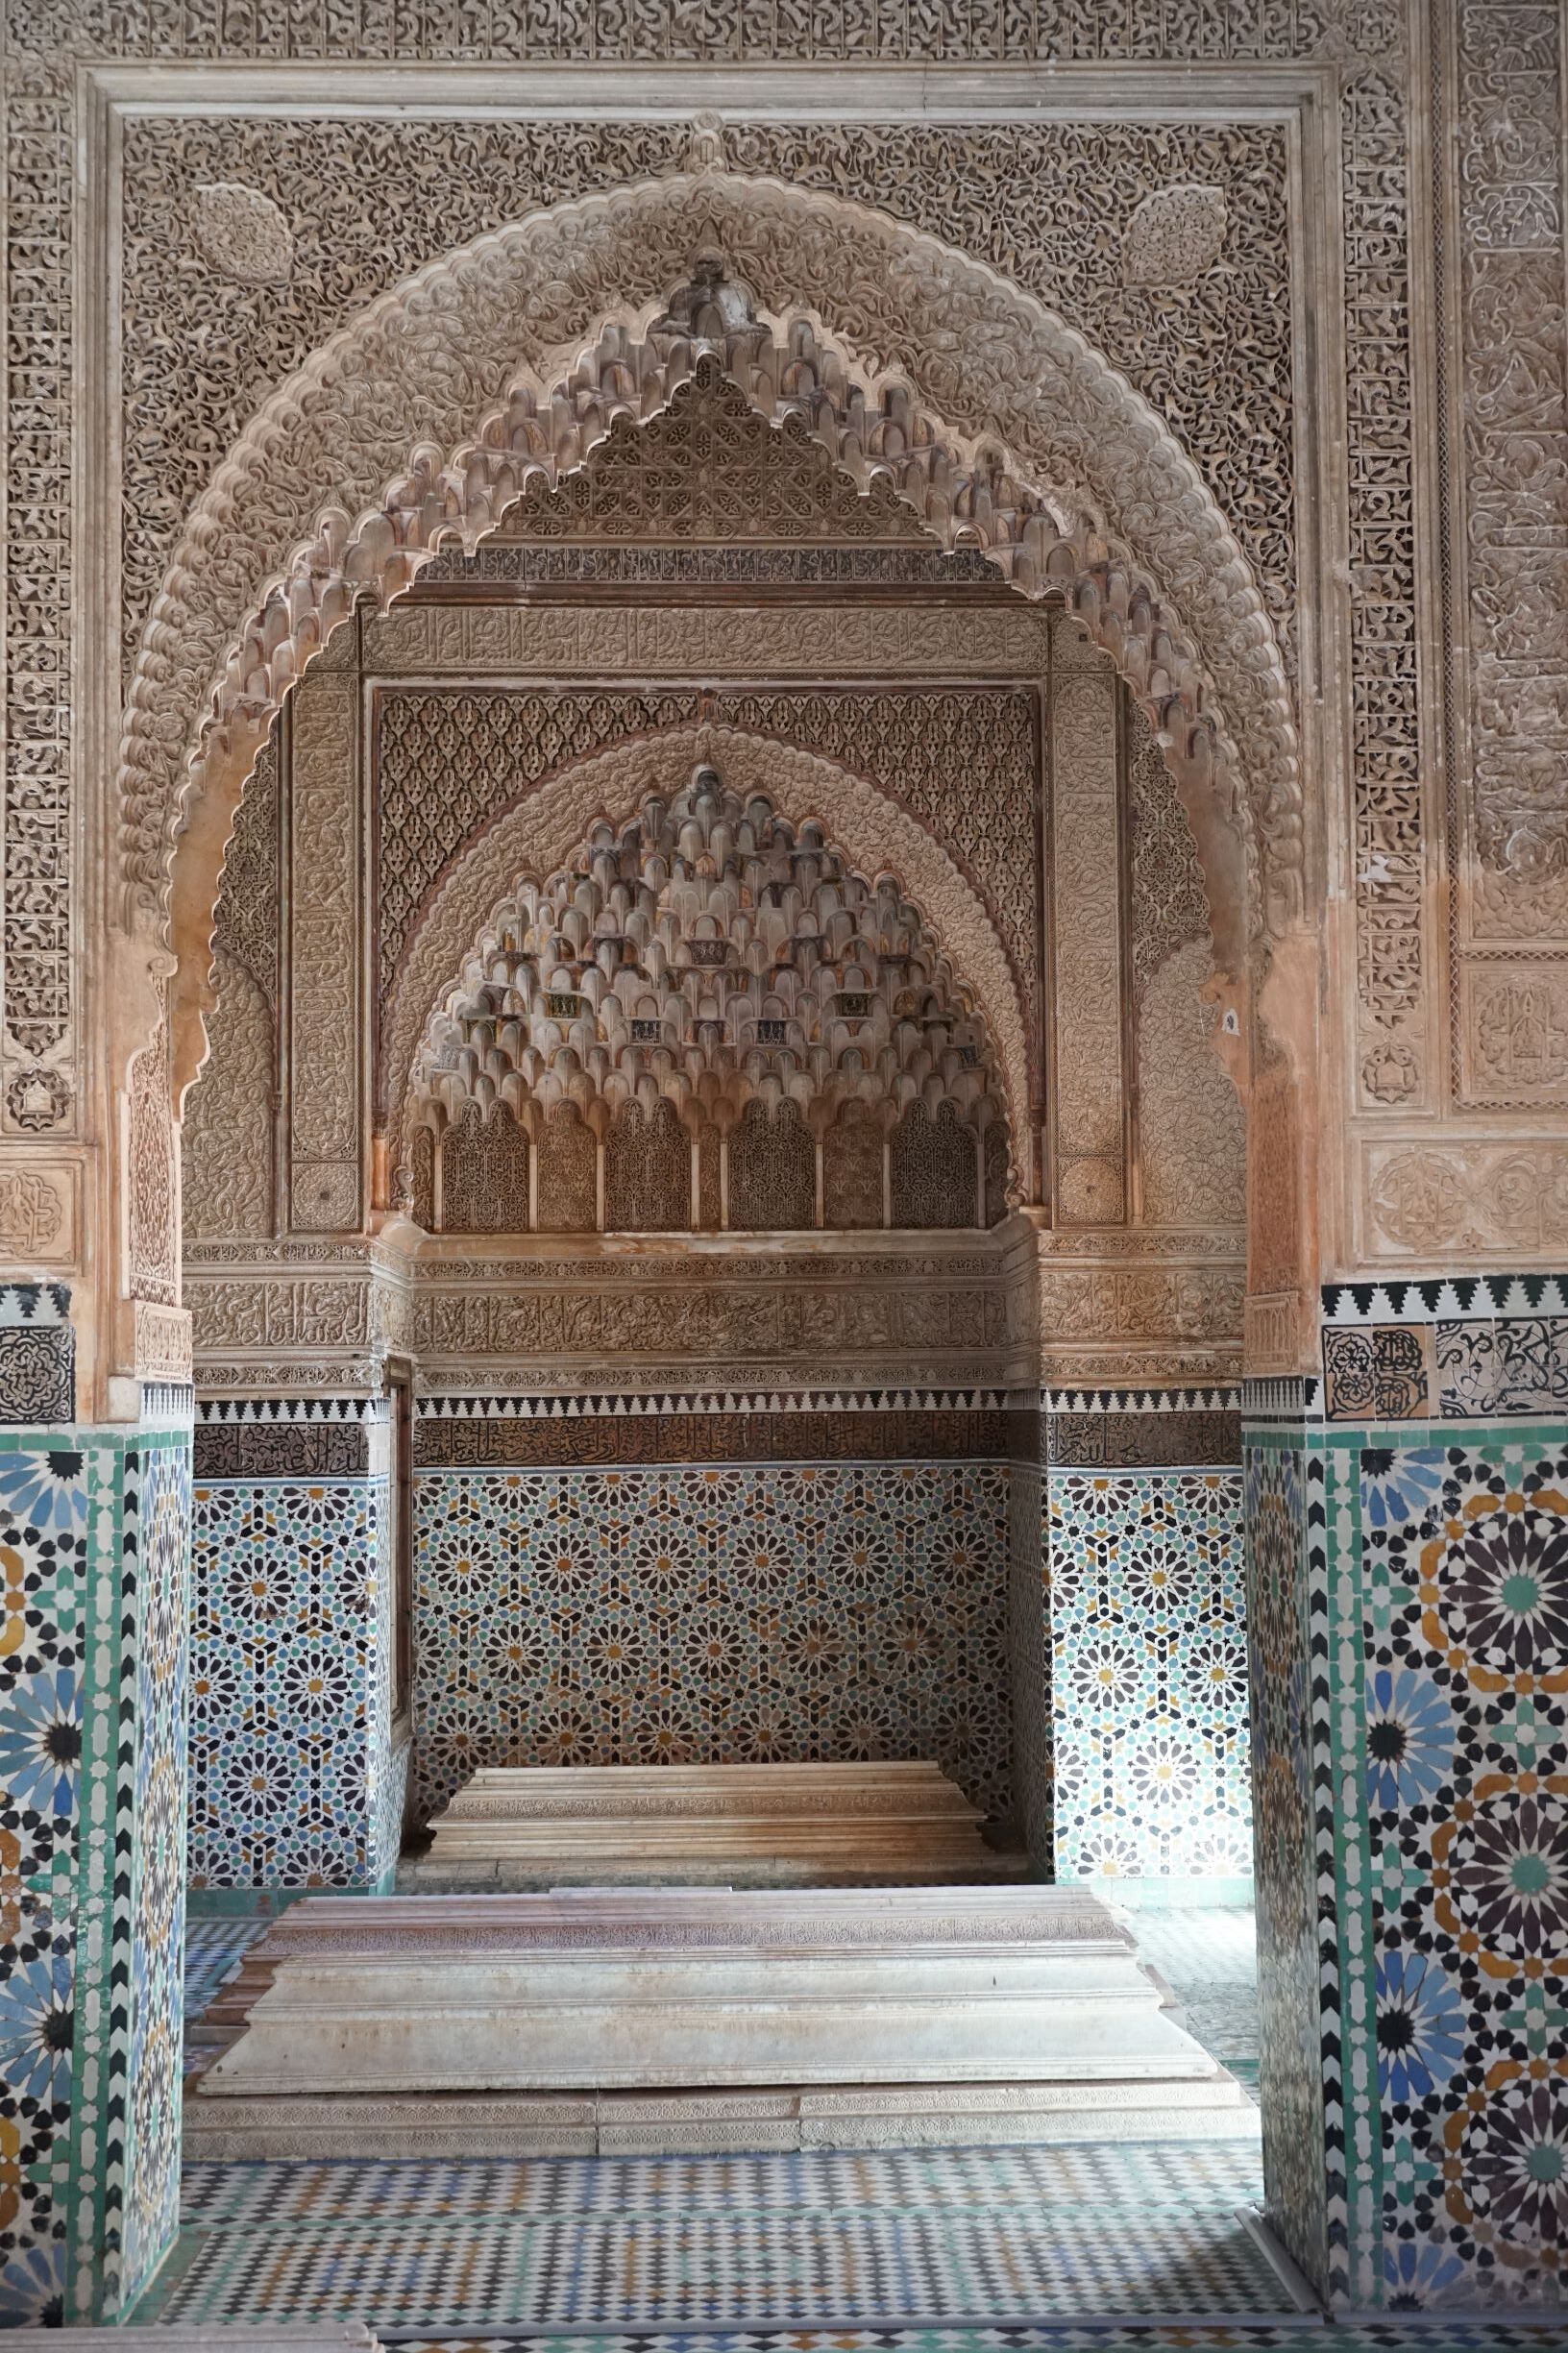 牆上雕刻著華麗細緻的可蘭經文